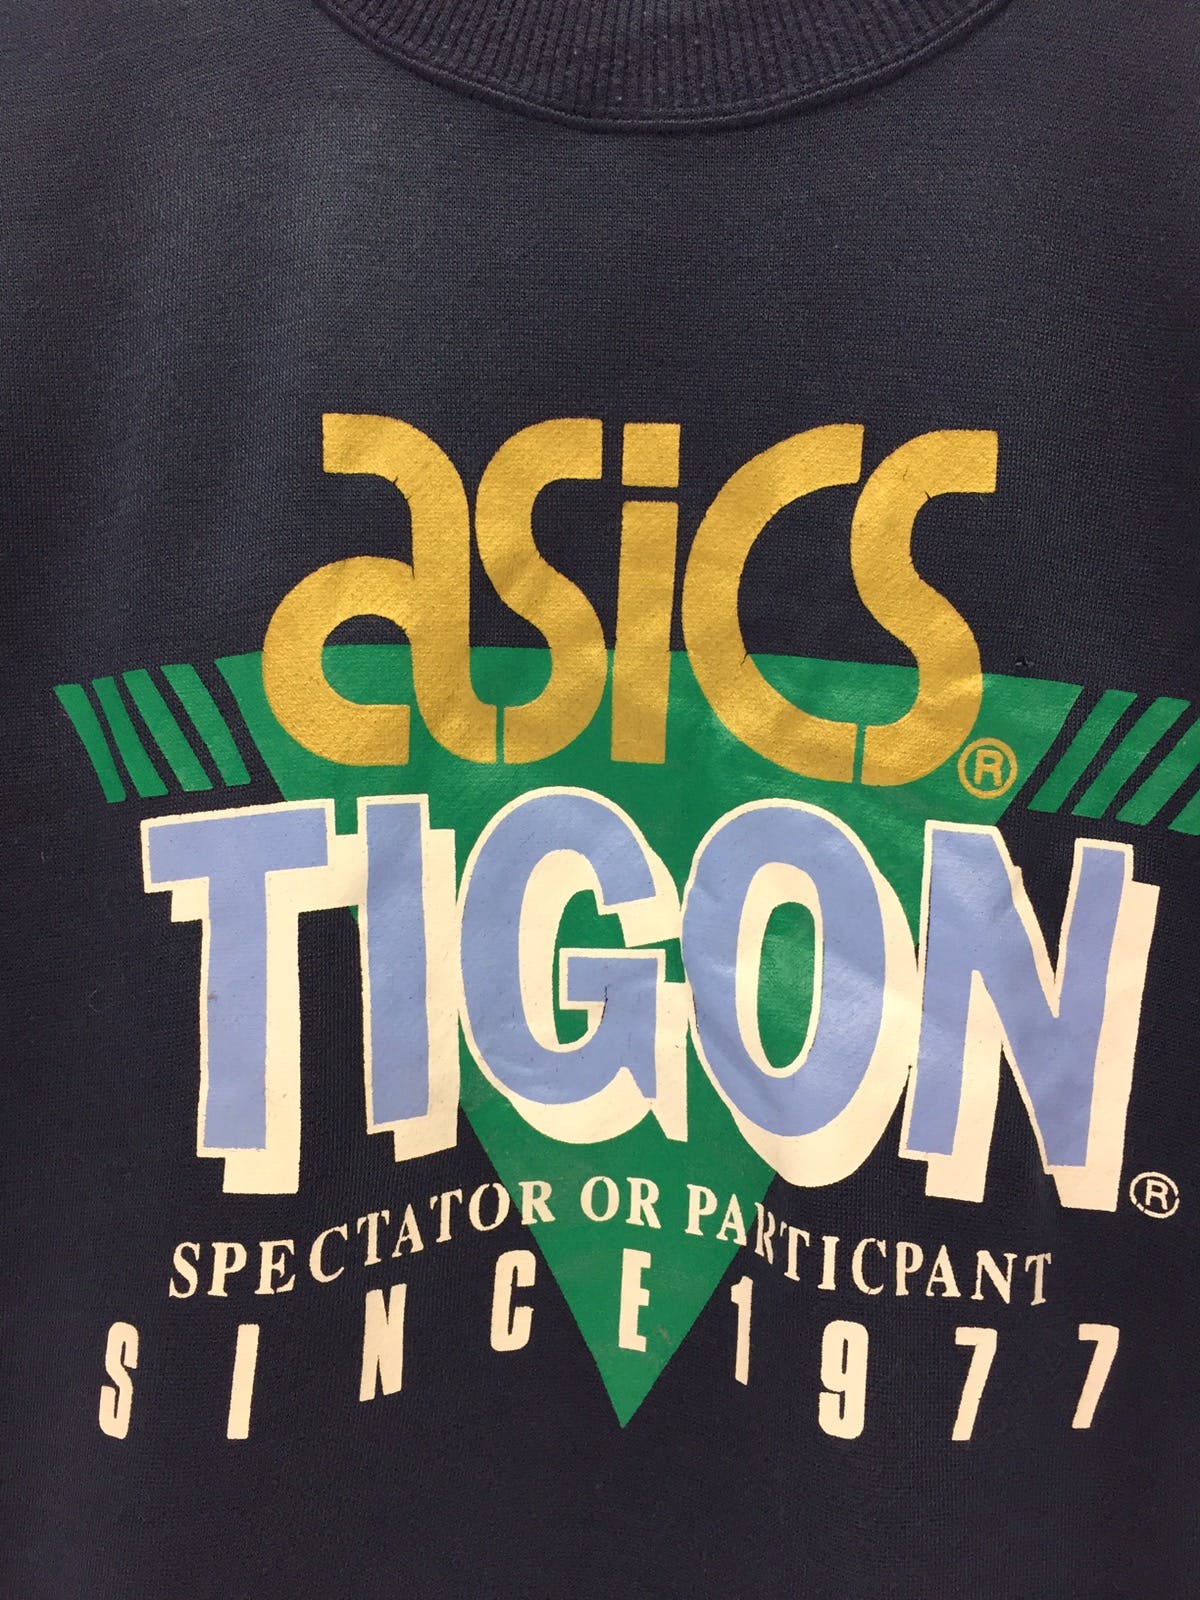 Asics Tigon Big Logo Sweatshirt - 3